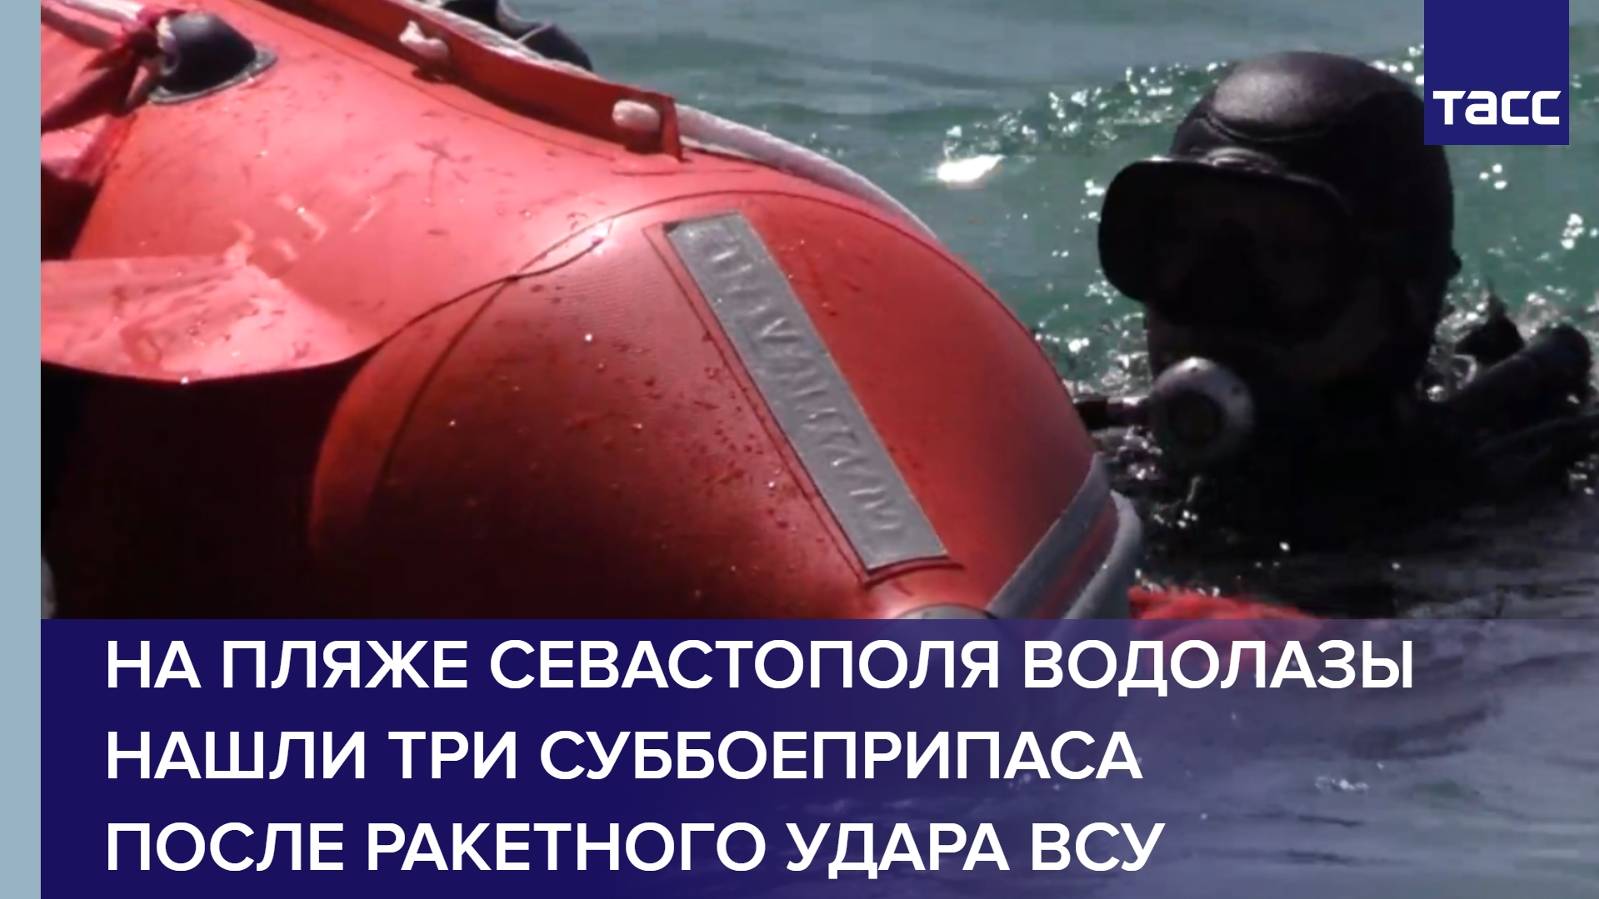 На пляже Севастополя водолазы нашли три суббоеприпаса после ракетного удара ВСУ